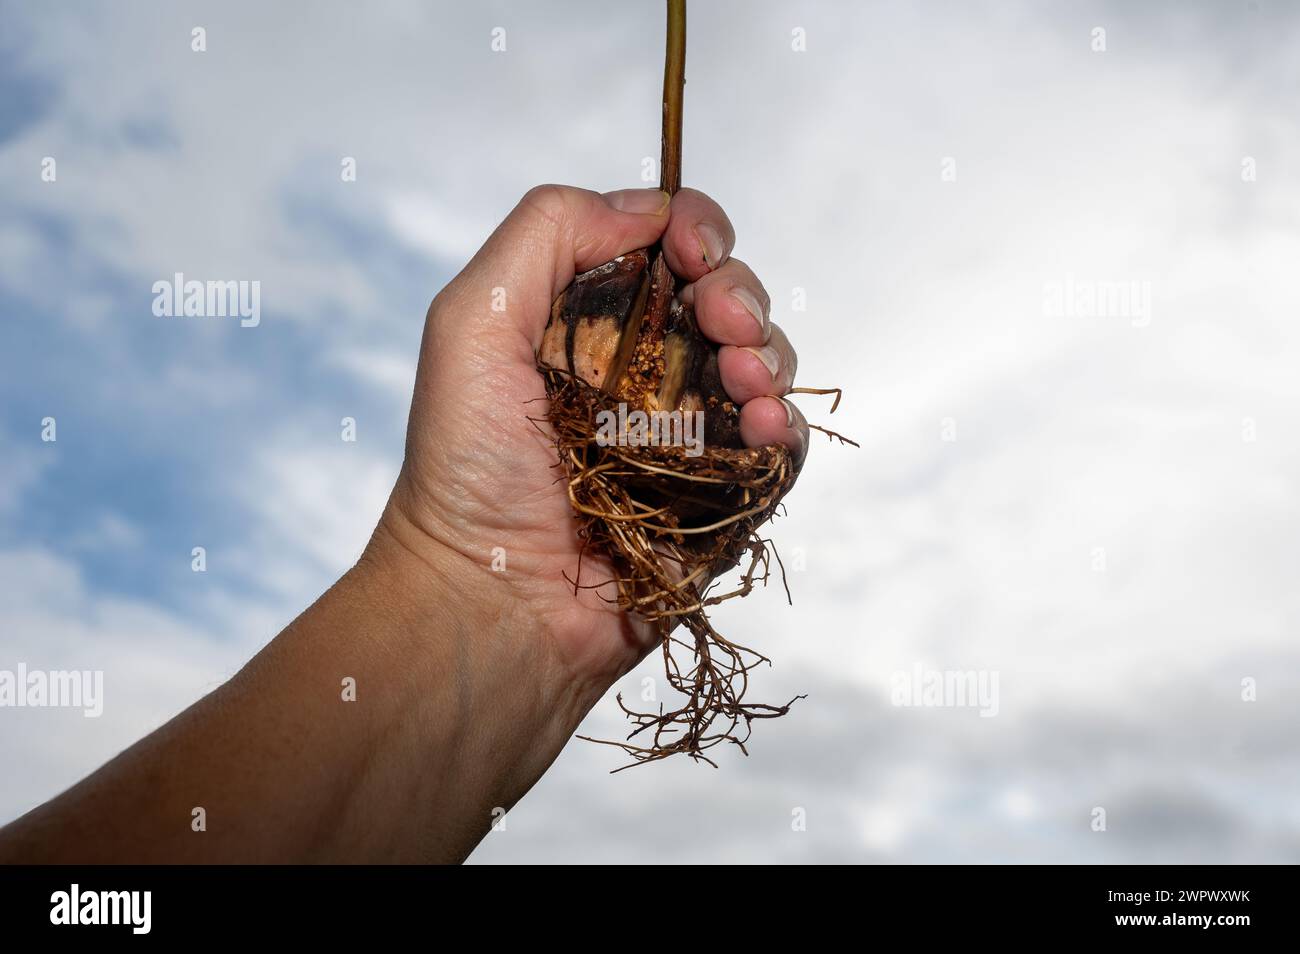 Une main humaine tient une fosse d'avocat (Persea americana) avec des racines contre un ciel couvert Banque D'Images